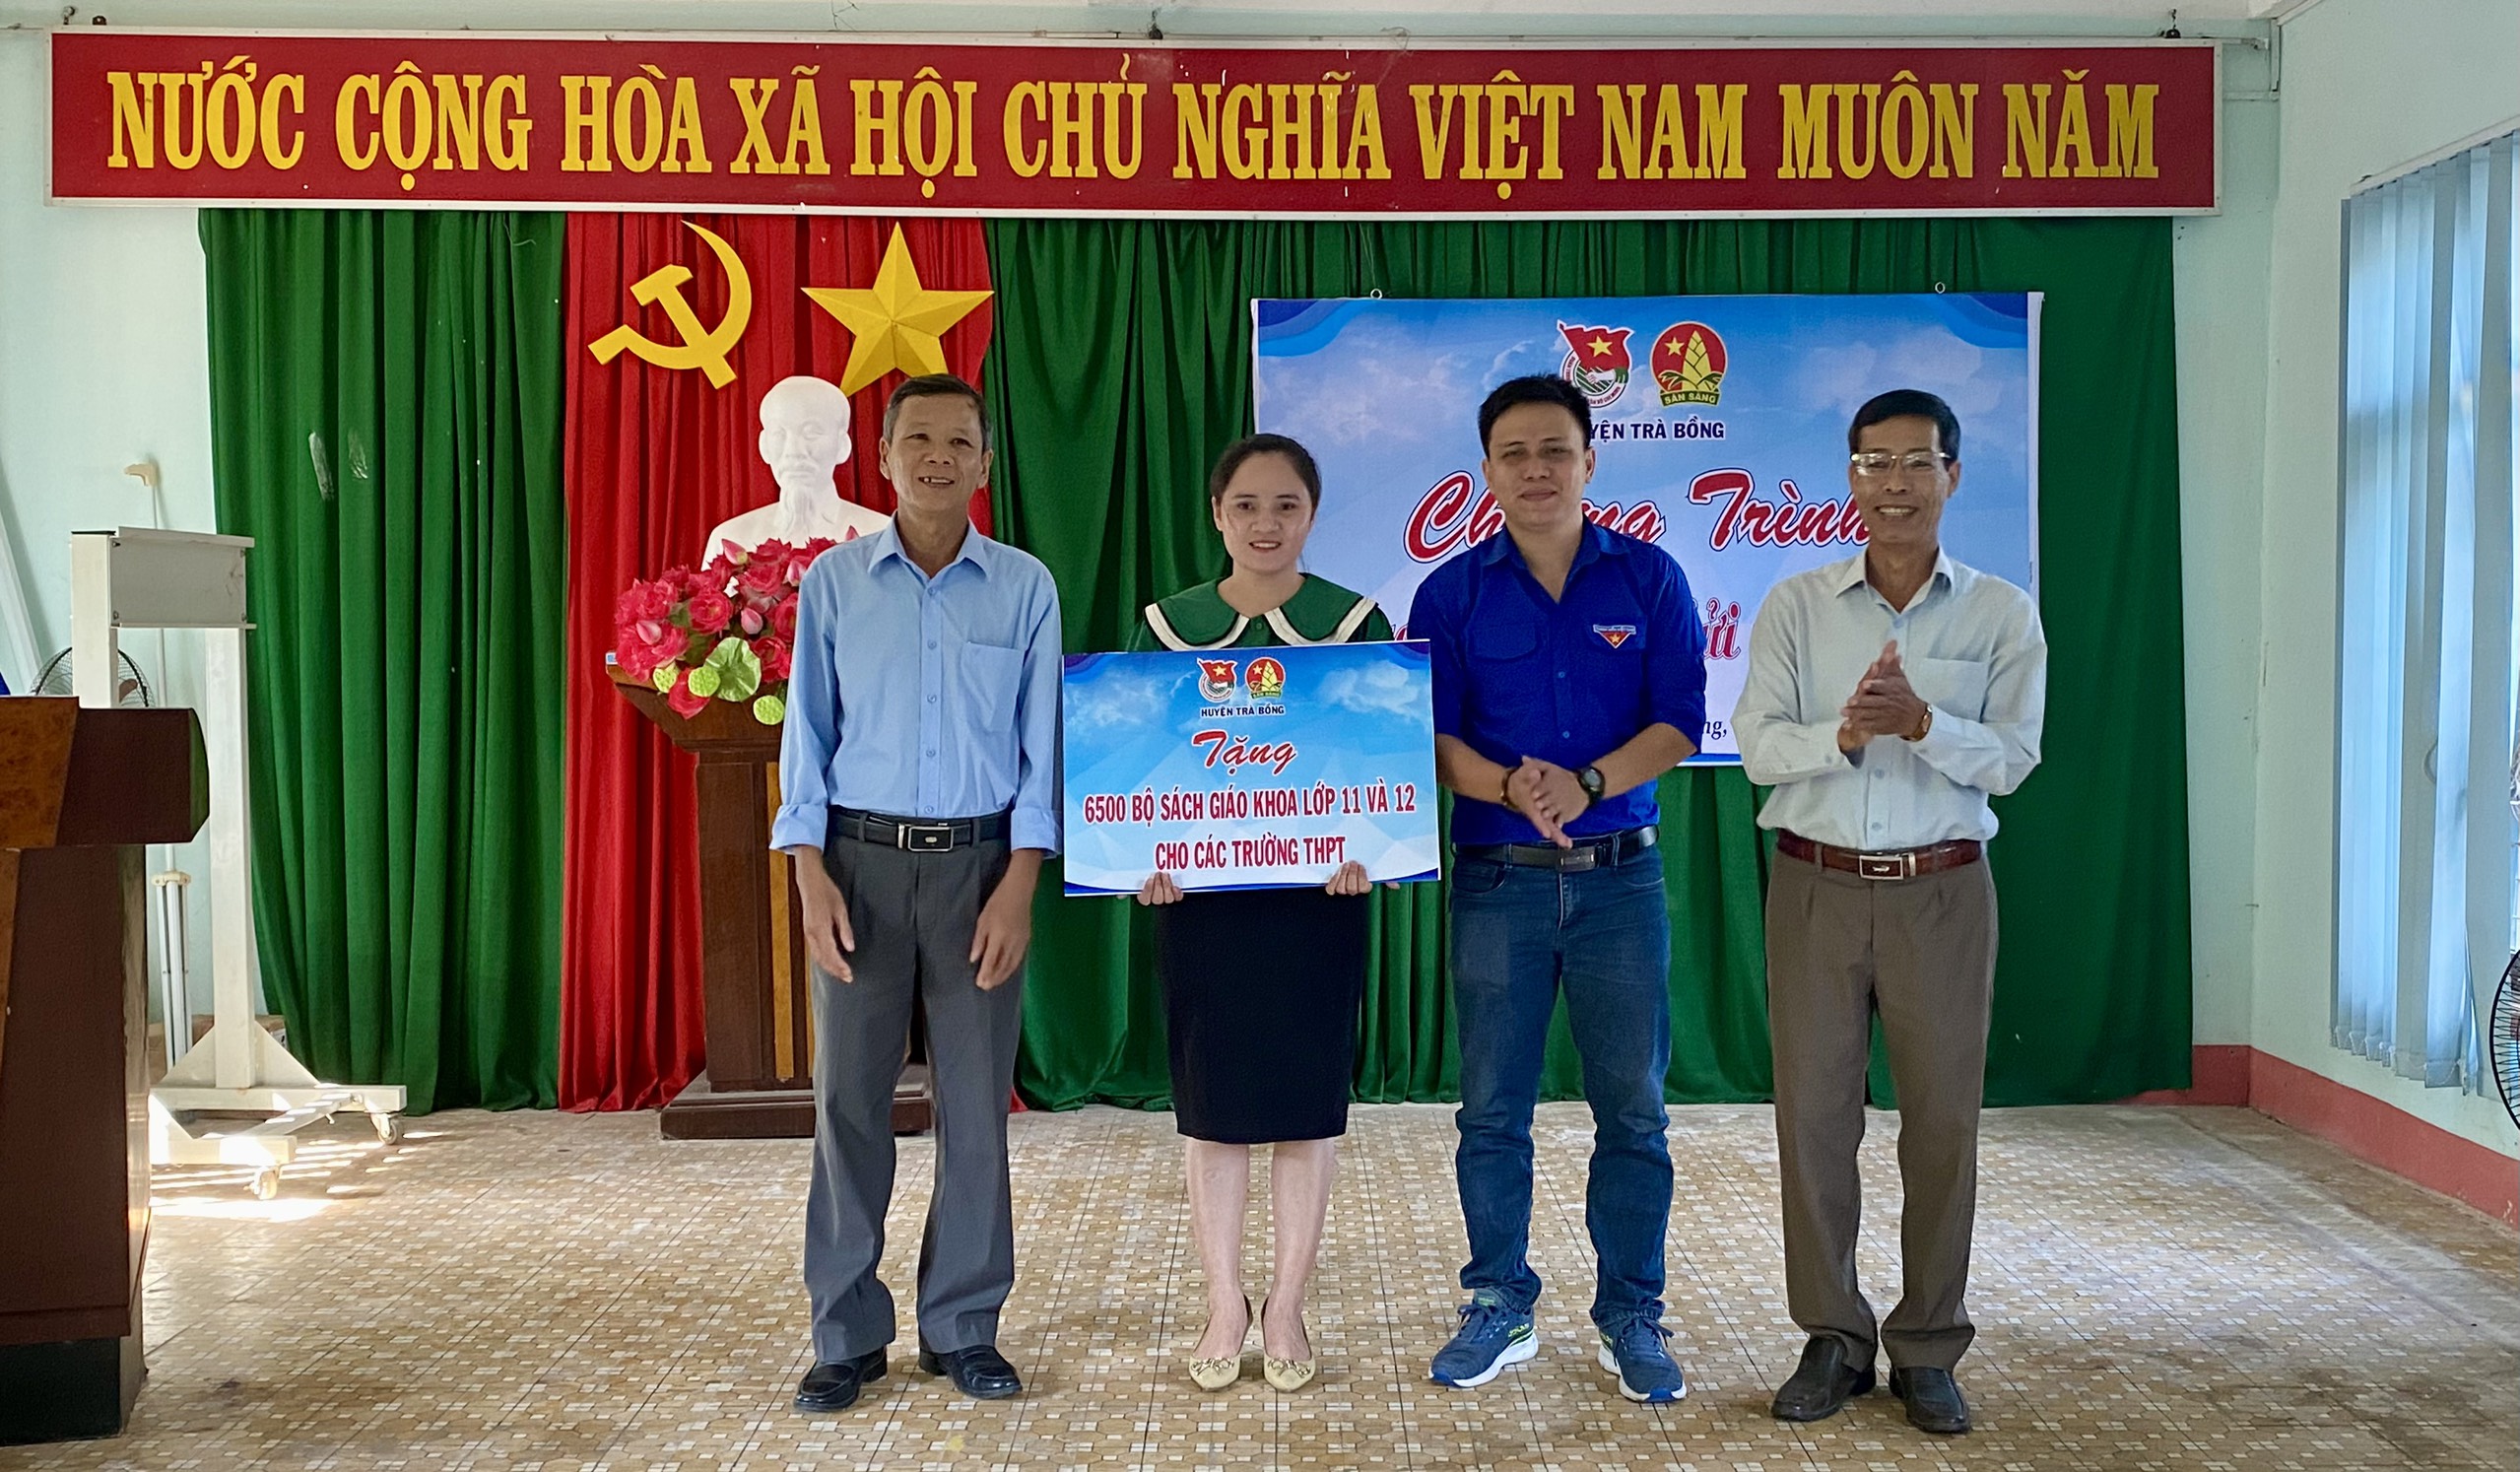 Huyện đoàn Trà Bồng tổ chức Chương trình “Trao kiến thức – Gửi yêu thương” năm 2022